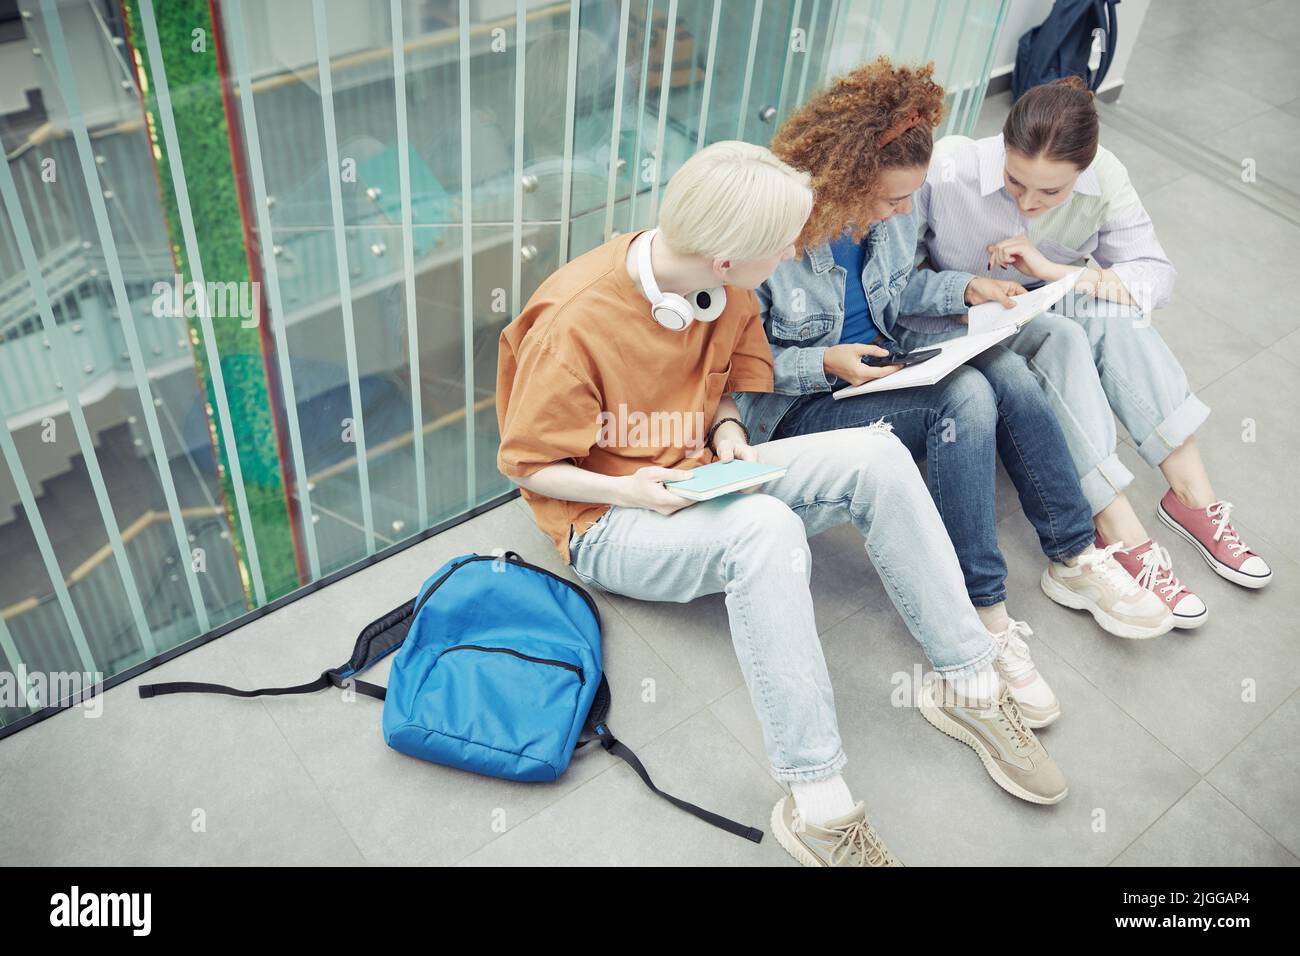 Drei interkulturelle Jugendliche in Casualwear schauen sich im Copybook eines Mädchens mit welligen Haaren Notizen an, während sie sich auf dem Boden ausruhen Stockfoto